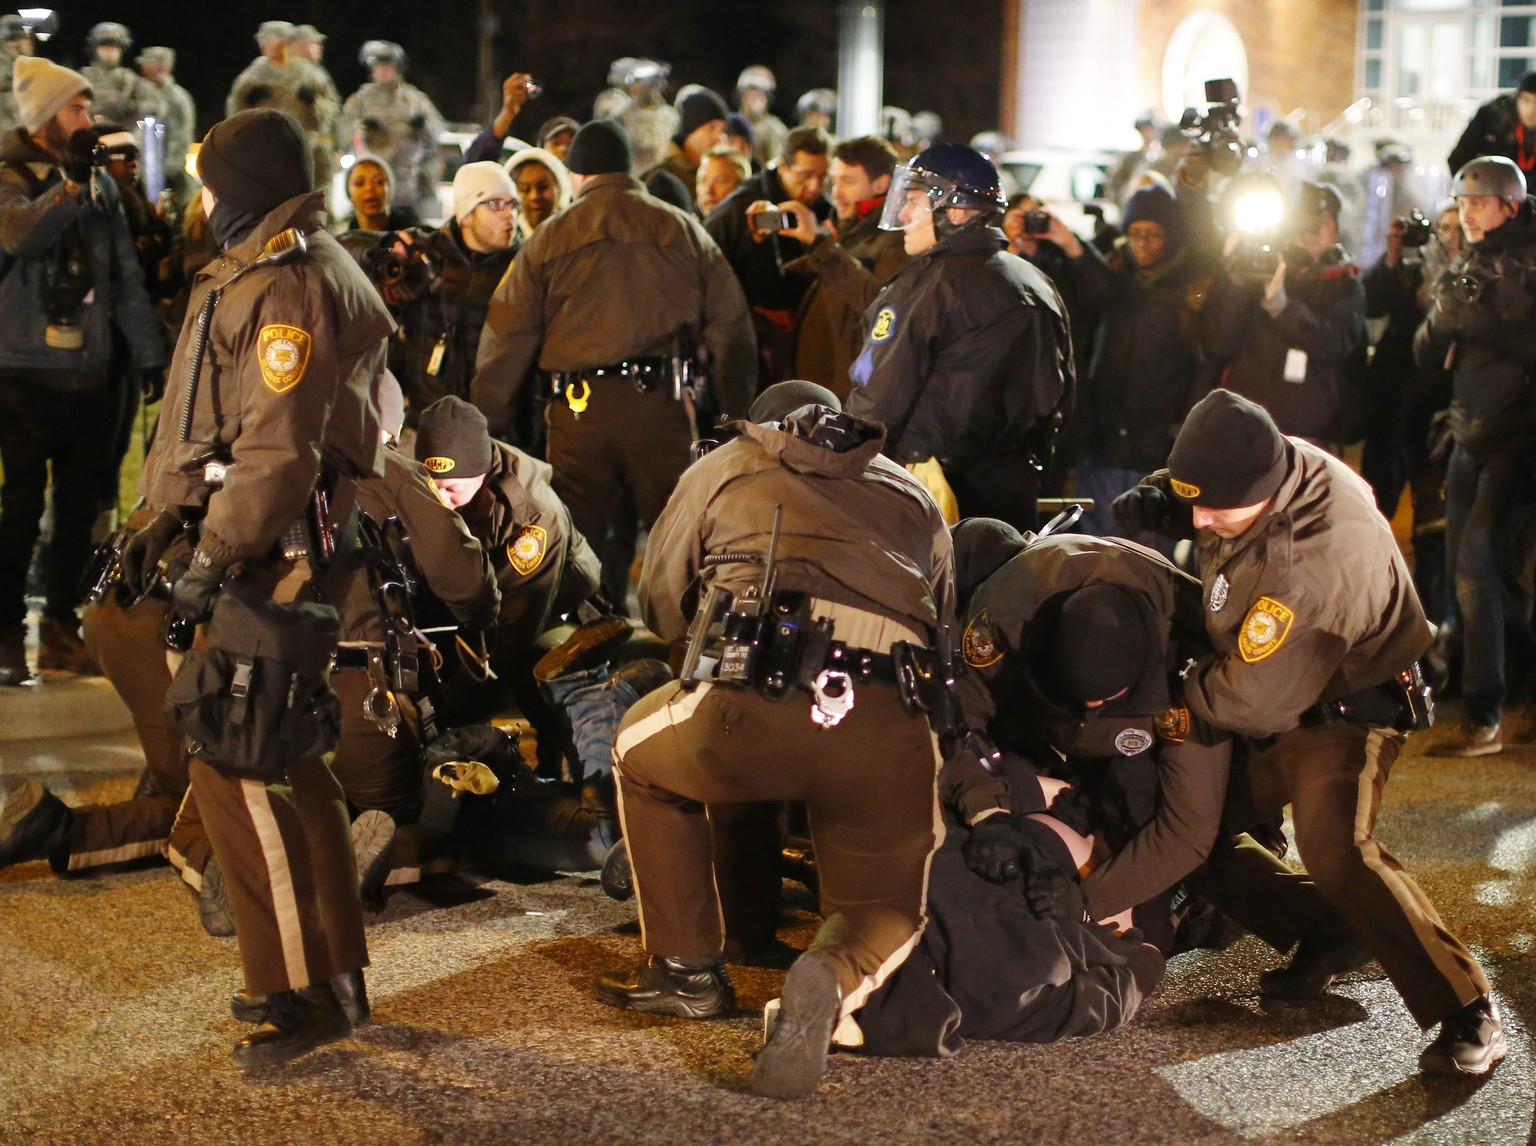 Die zweite Nacht nach dem umstrittenen Urteil war bedeutend ruhiger in Ferguson. Dennoch kam es zu Verhaftungen.&nbsp;